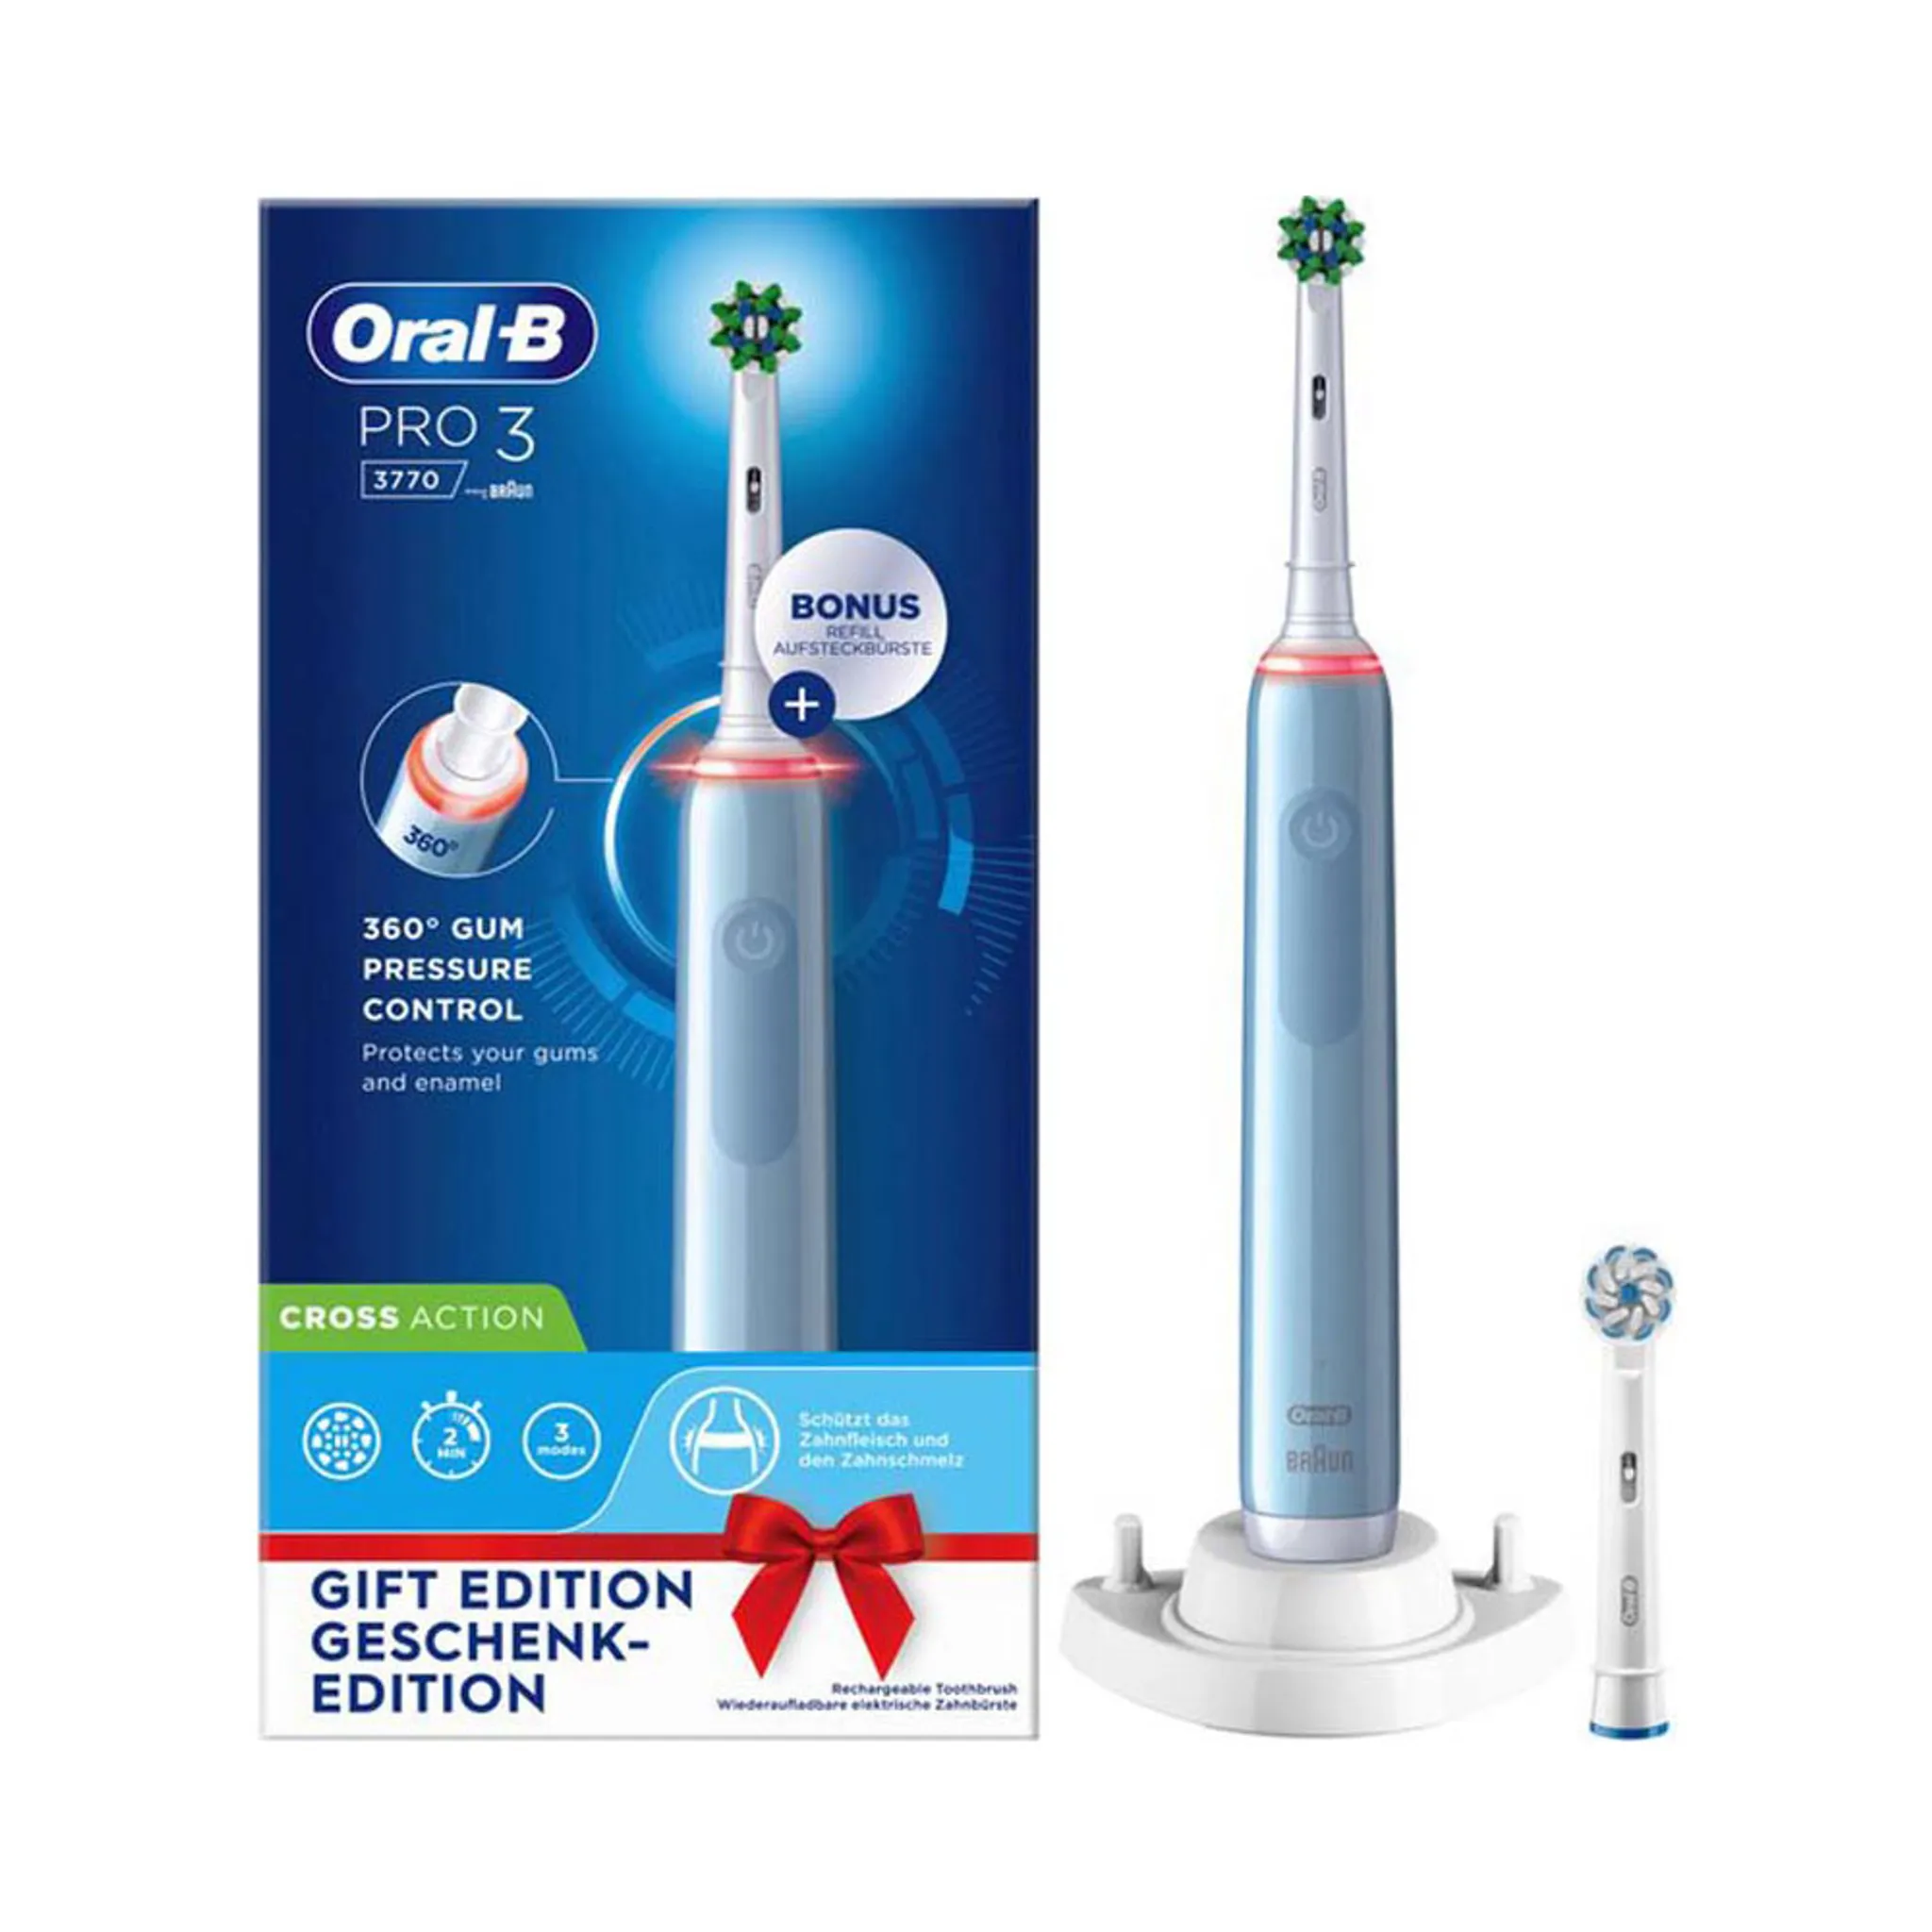 Pro 3 Zahnbürste Oral-B Elektrische - 3770